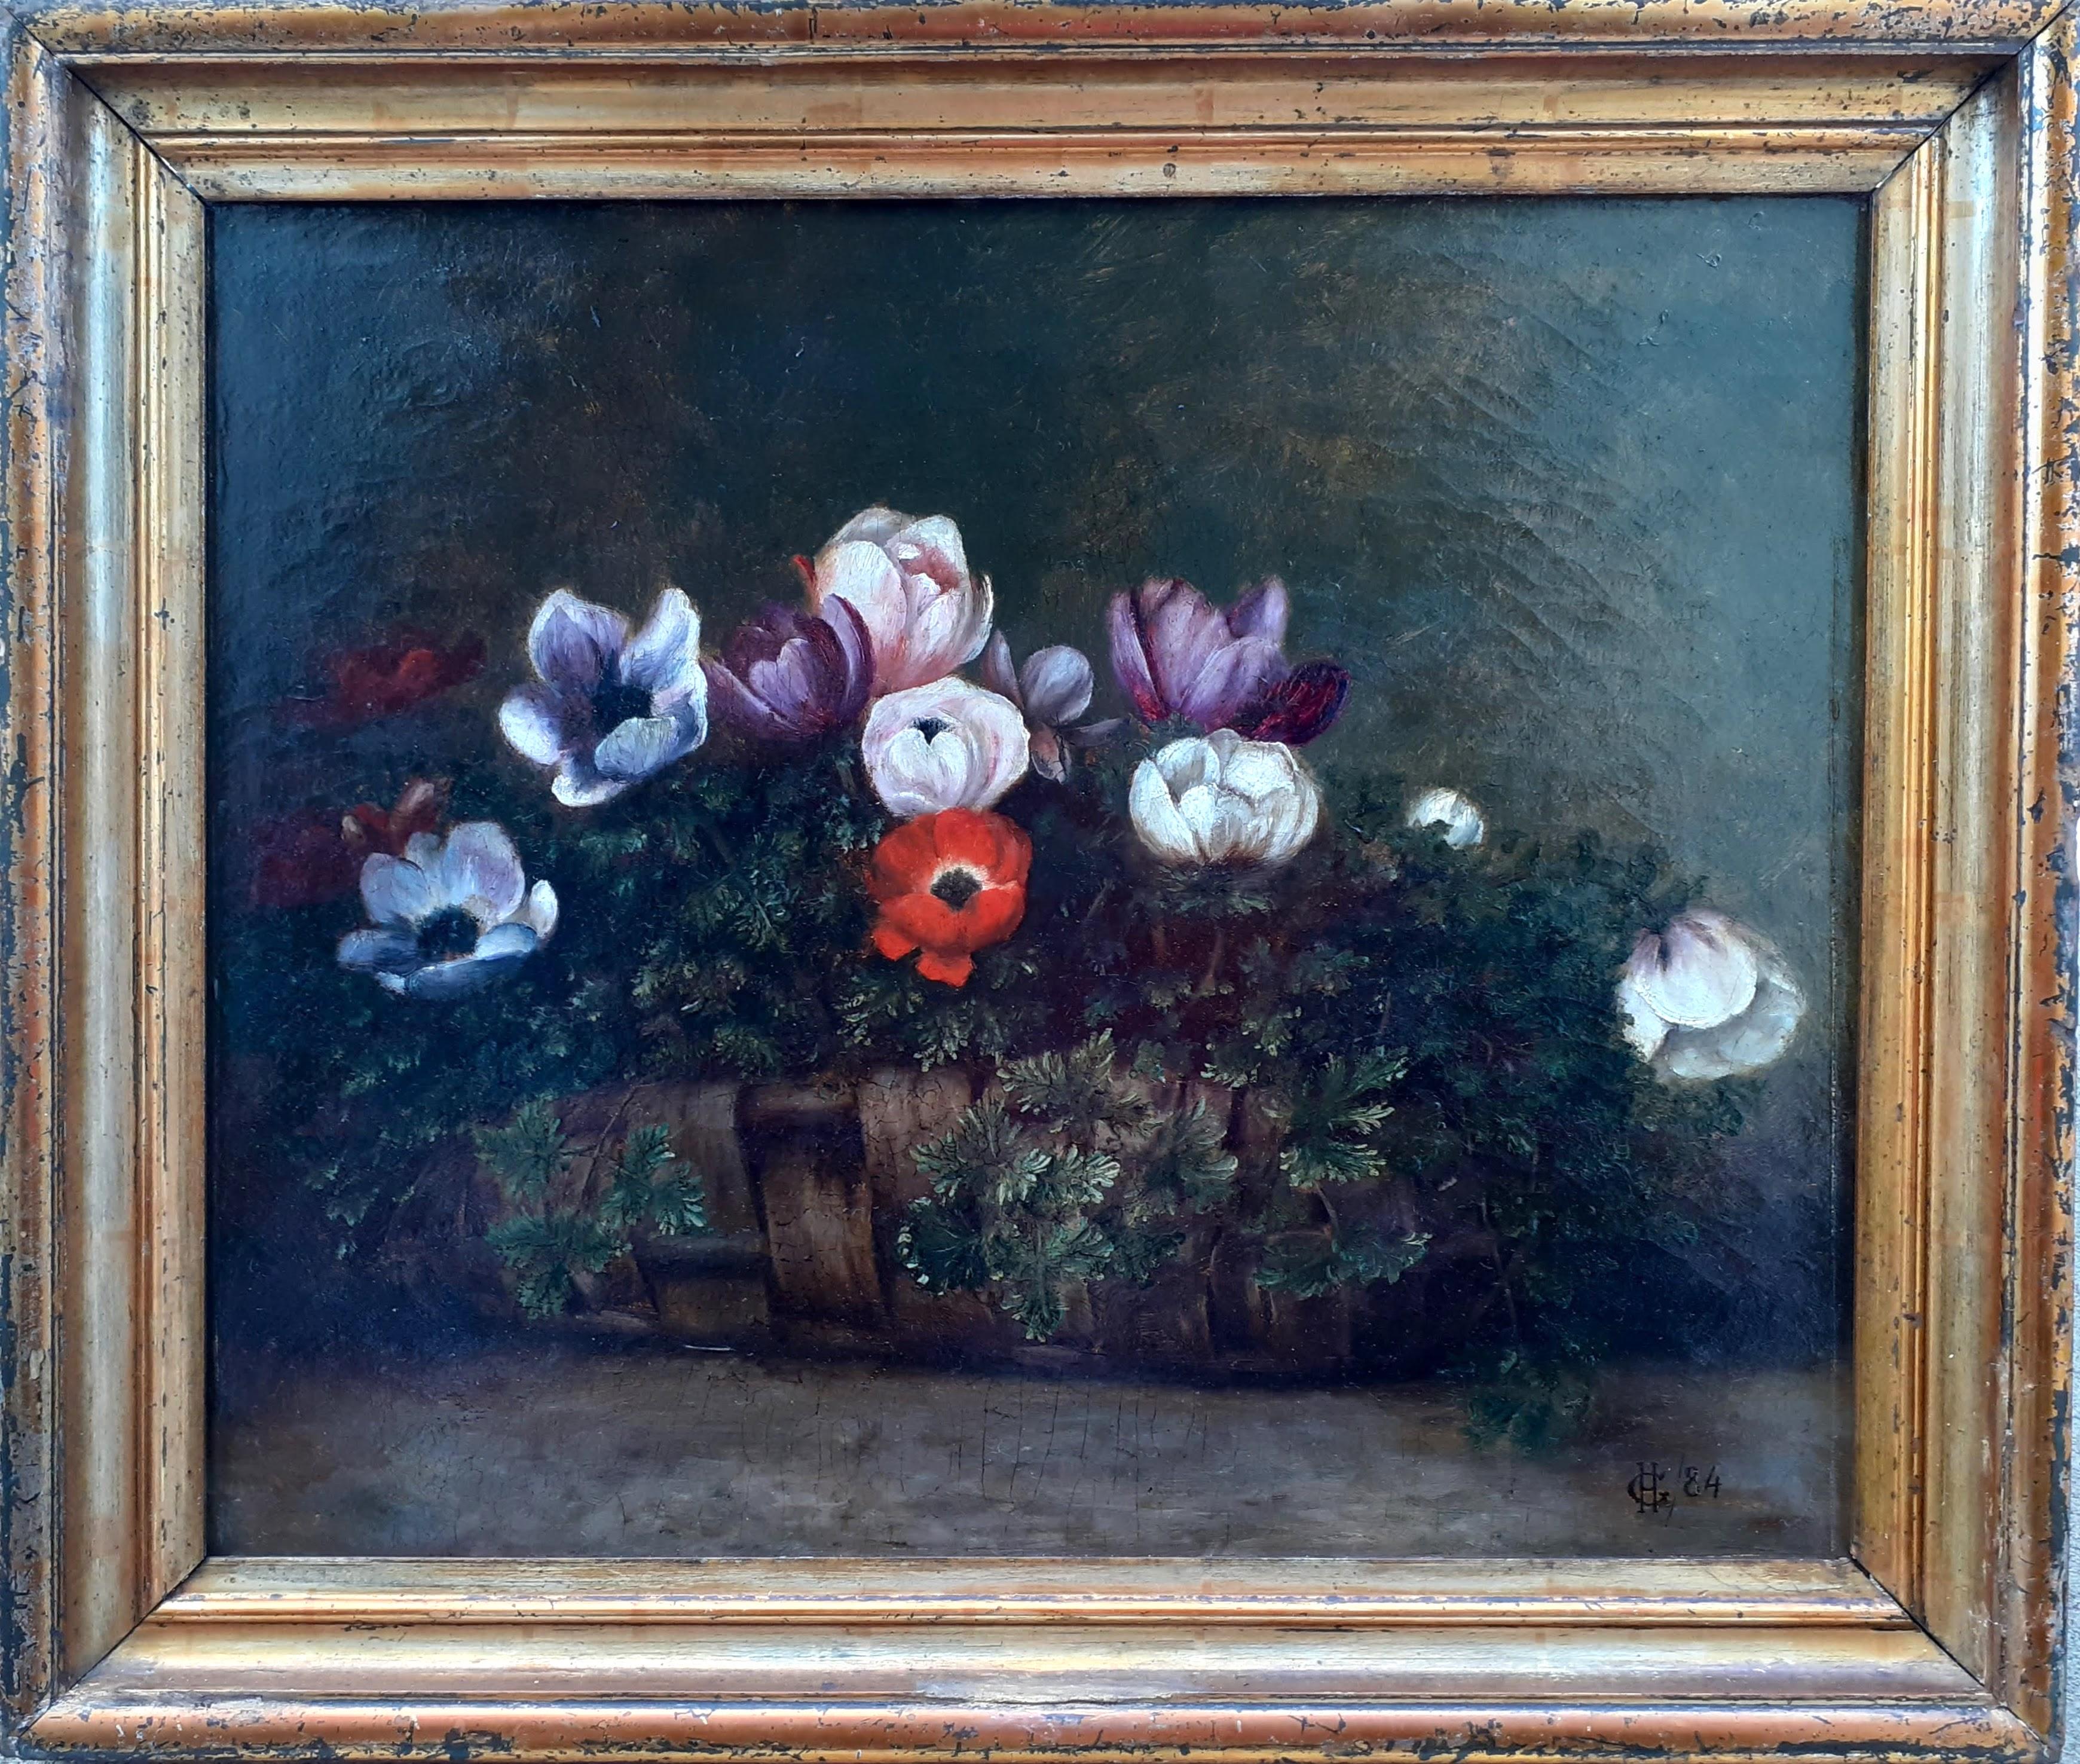 Korb aus Korbweide mit Anhängern, ein bescheidenes Festliches Geschenk, Blumenstillleben aus dem 19. Jahrhundert